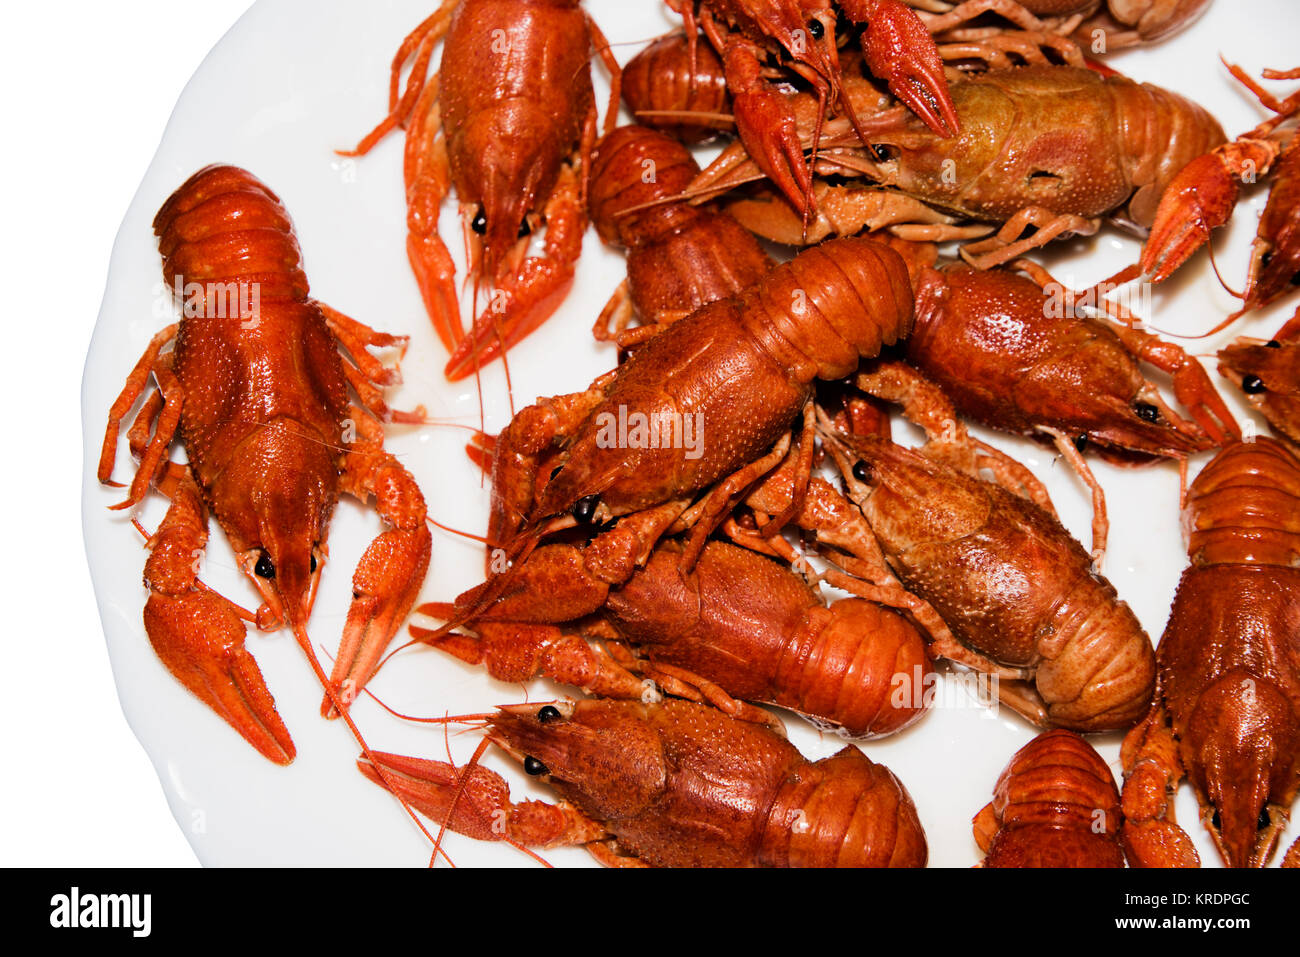 Alive crayfish isolated on white background. Stock Photo